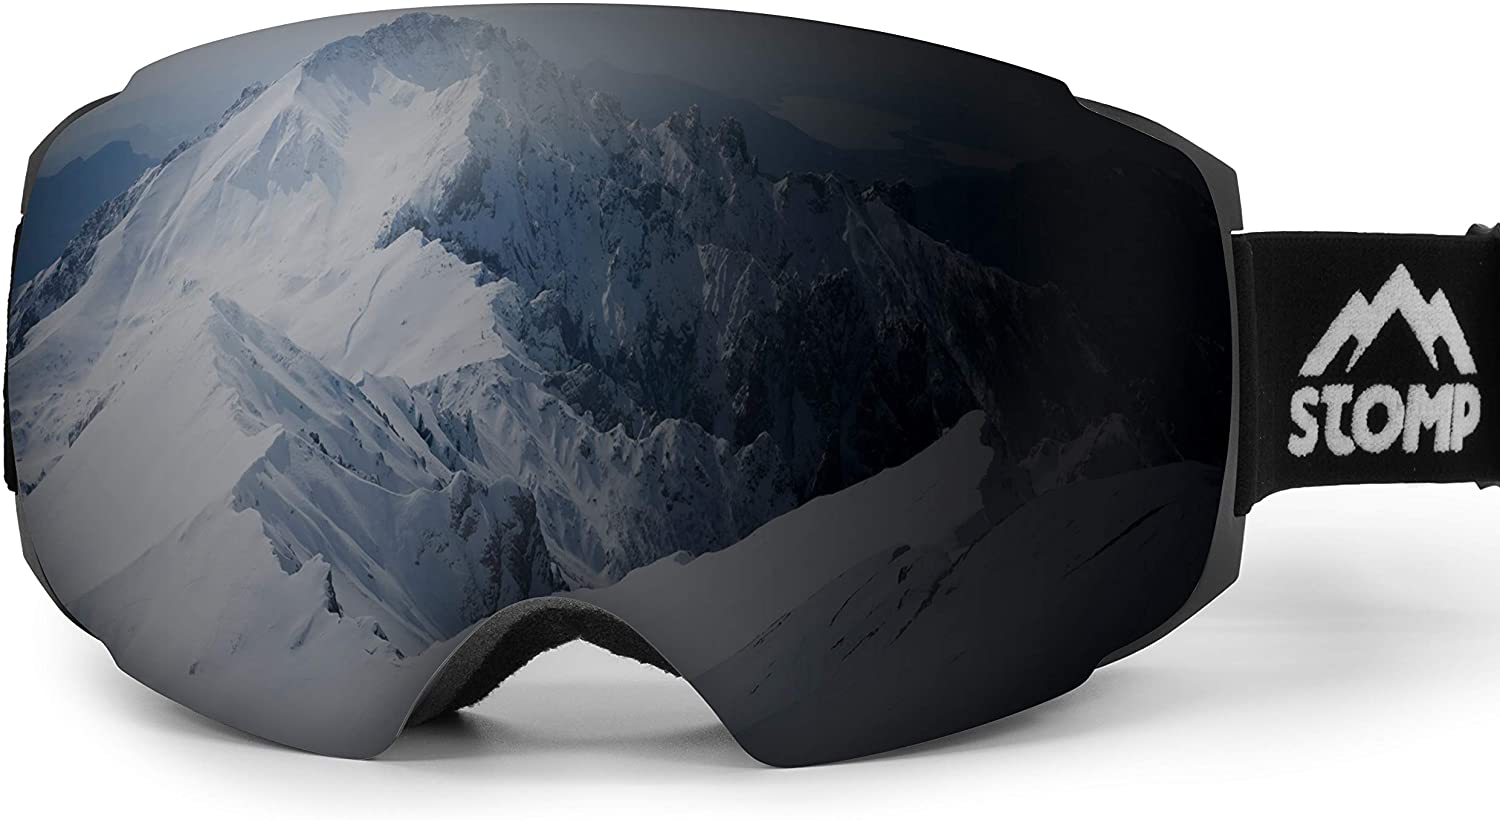 Stomp Ski Goggles PRO - Frameless, Interchangeable Lens 100% UV400 Protection Snow Goggles for Men & Women (Black) - image 1 of 7